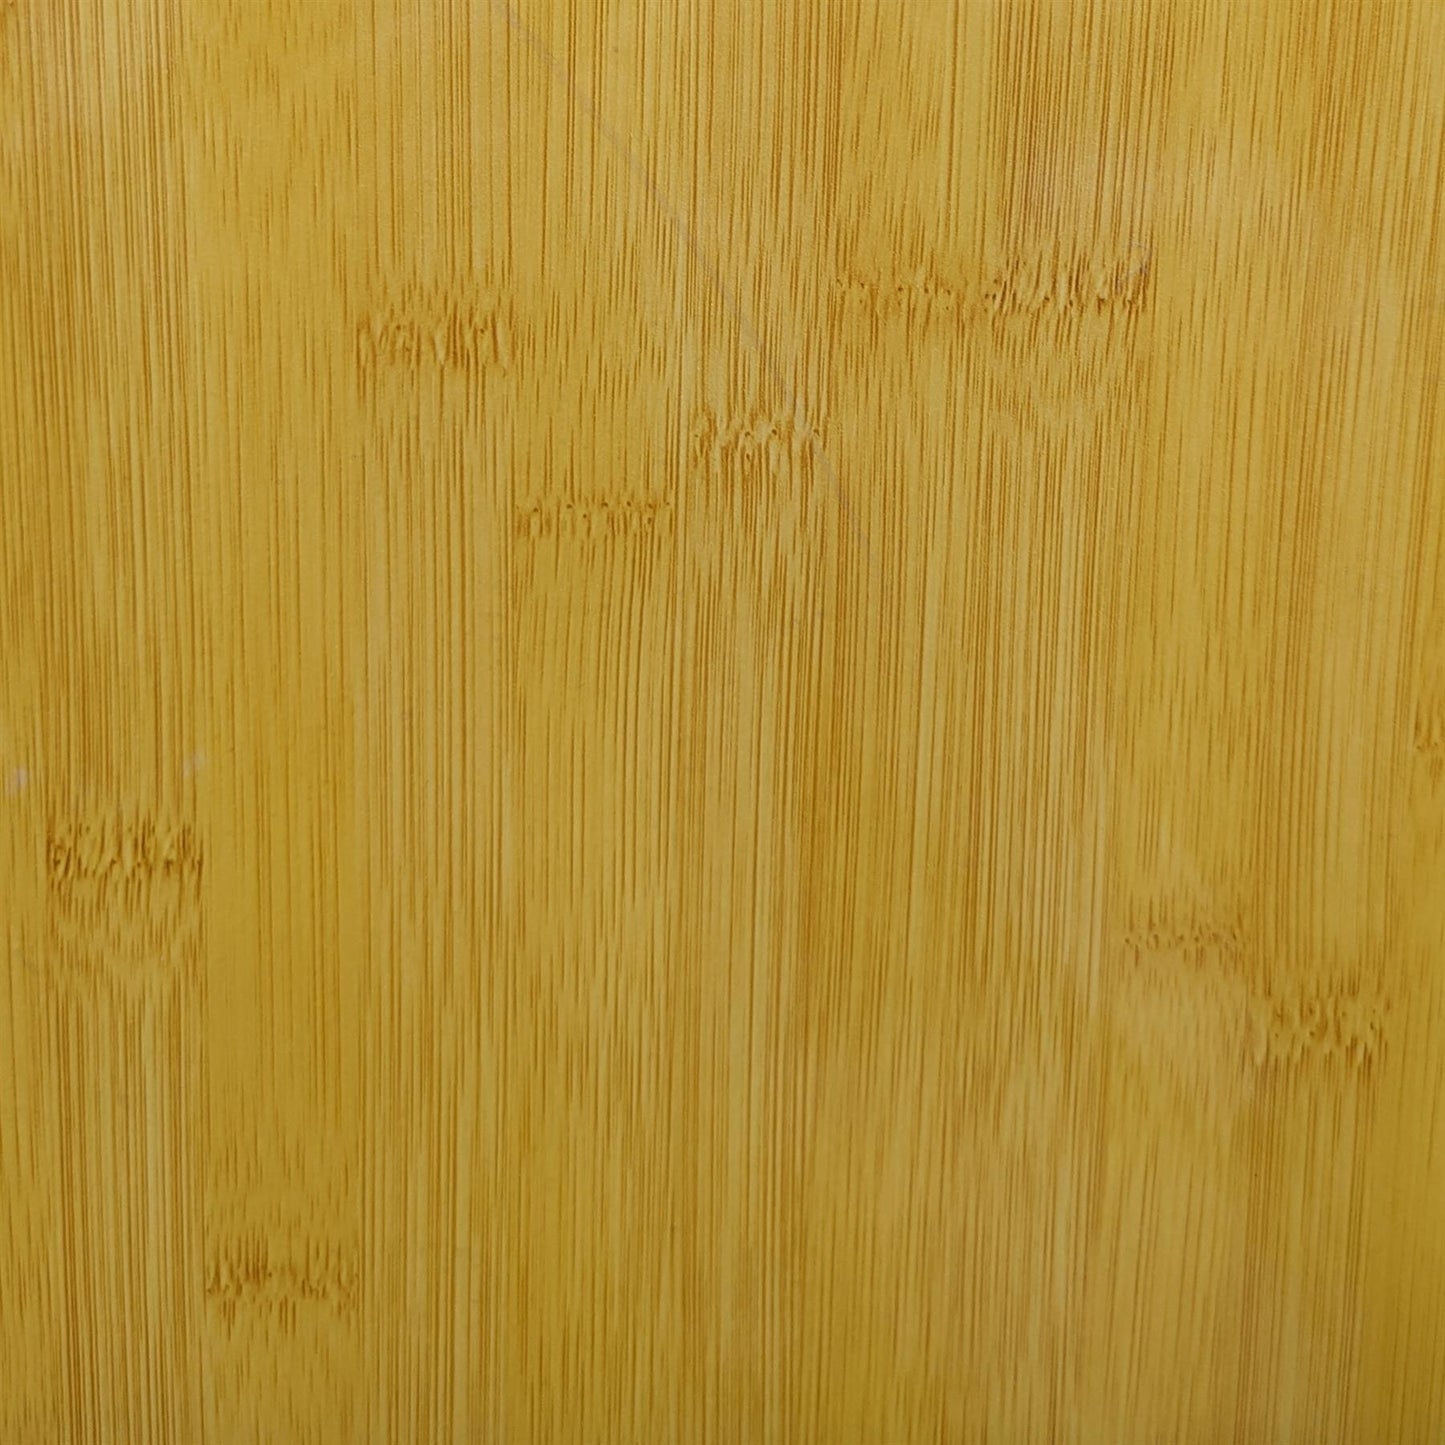 [Incudo] Bamboo Wood Effect Acrylic Sheet - 150x125x3mm